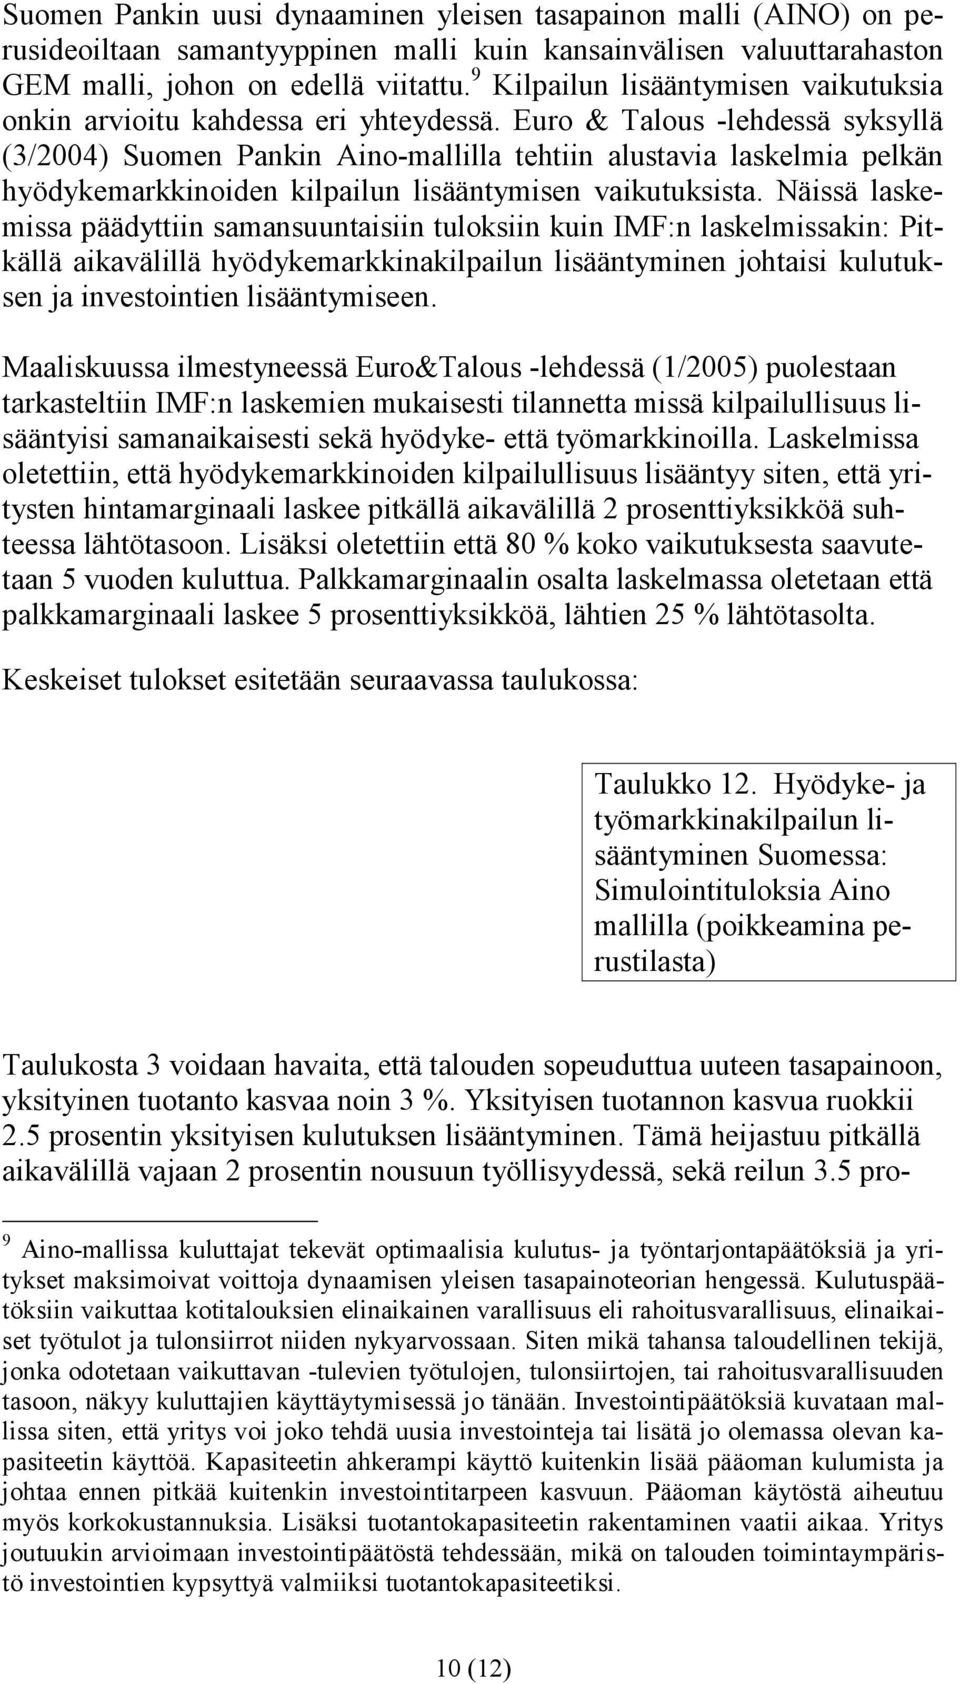 Euro & Talous -lehdessä syksyllä (3/2004) Suomen Pankin Aino-mallilla tehtiin alustavia laskelmia pelkän hyödykemarkkinoiden kilpailun lisääntymisen vaikutuksista.